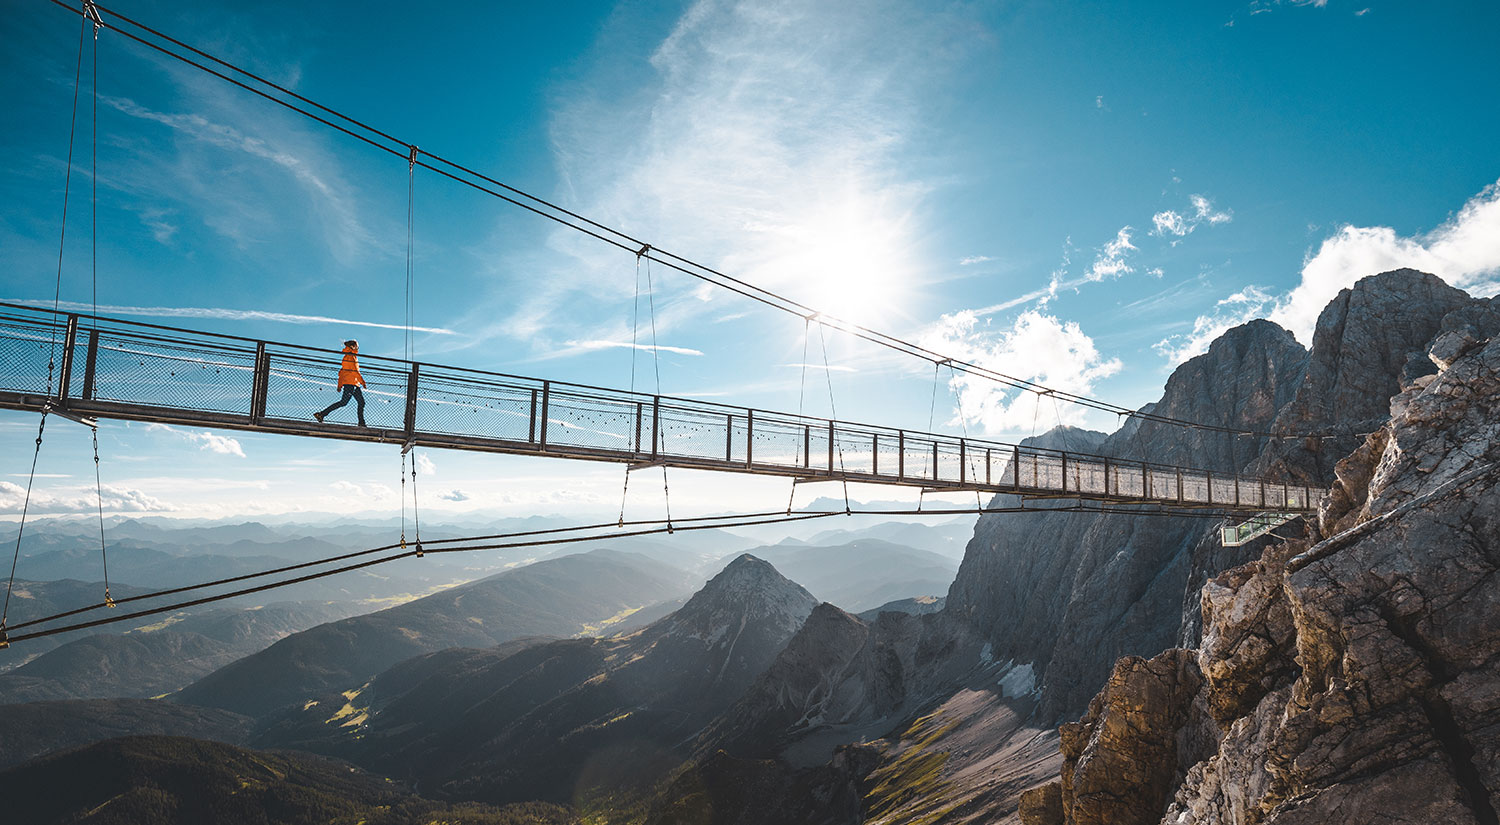 Hängebrücke am Dachstein Gletscher - ein tolles Ausflugsziel beim Urlaub am Bauernhof Haufhof nahe Schladming